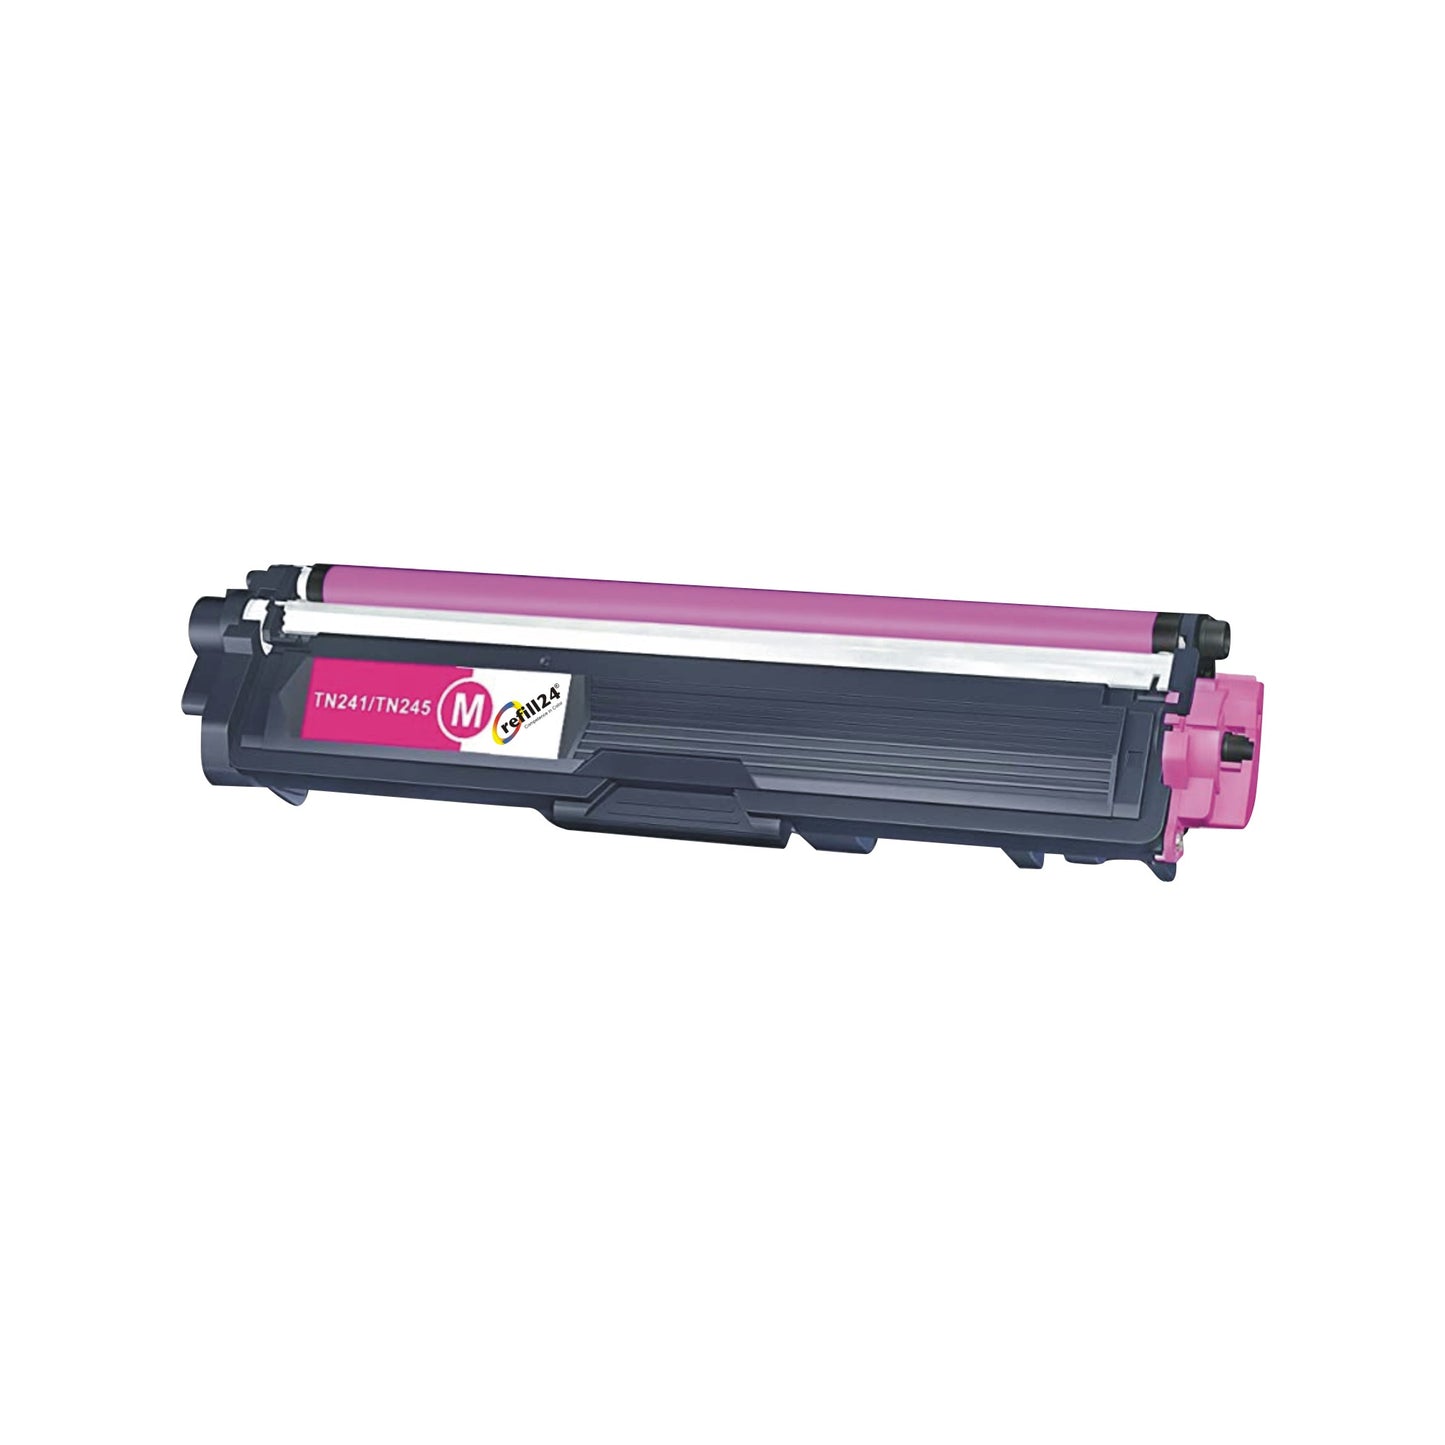 Toner Laser Color Compatible con Brother TN-241/TN-245